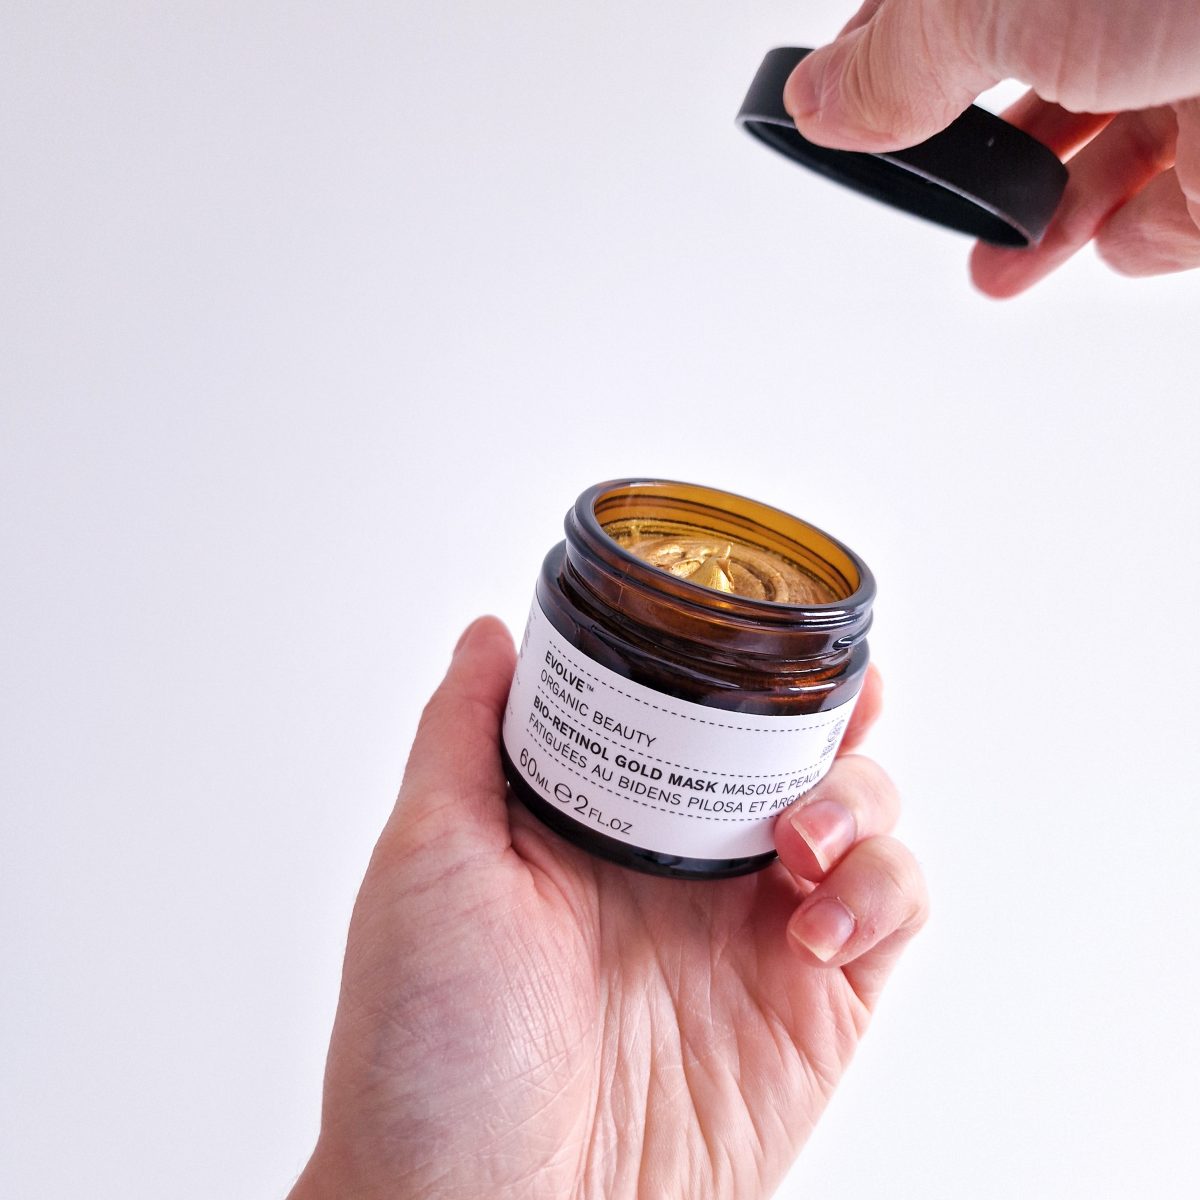 Masque éclat à base de bio-retinol et huile d'argan de la marque Evolve Beauty. Pot ouvert, texture crème, couleur dorée.